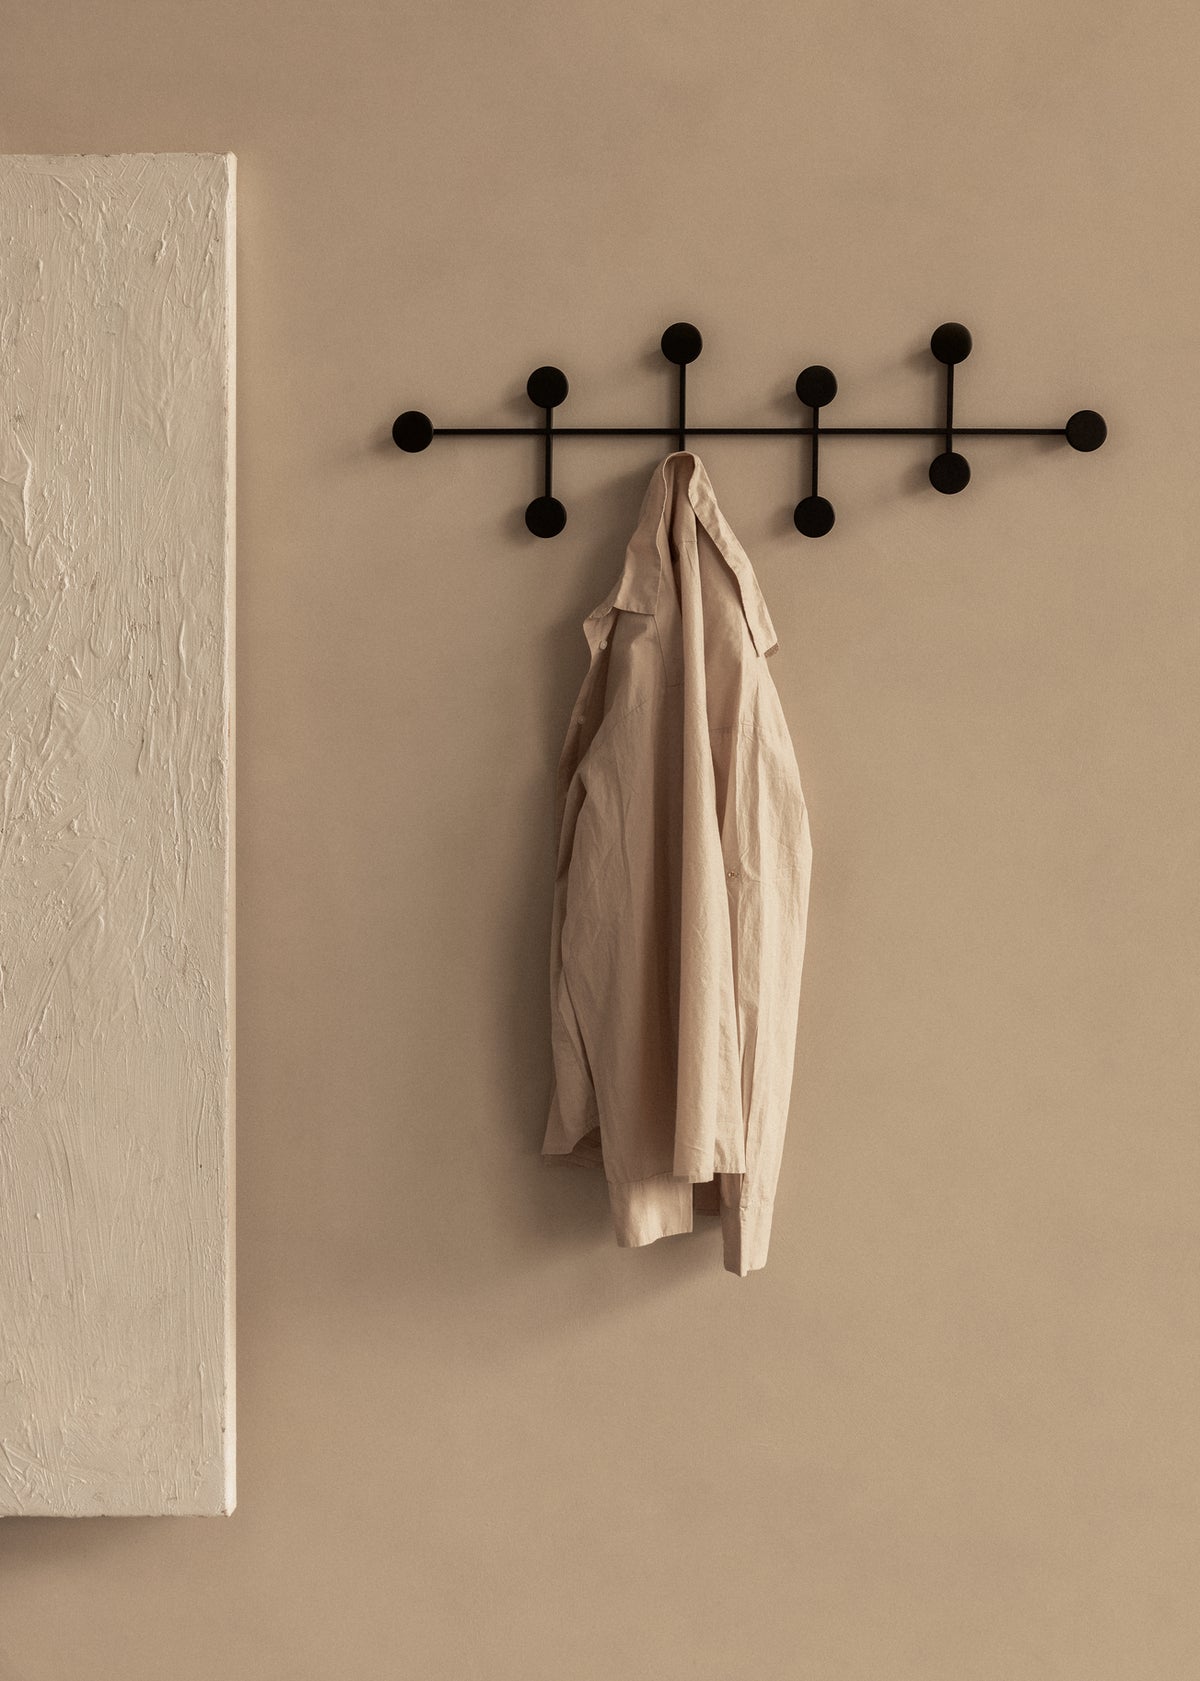 Afteroom Coat Hanger by Audo Copenhagen